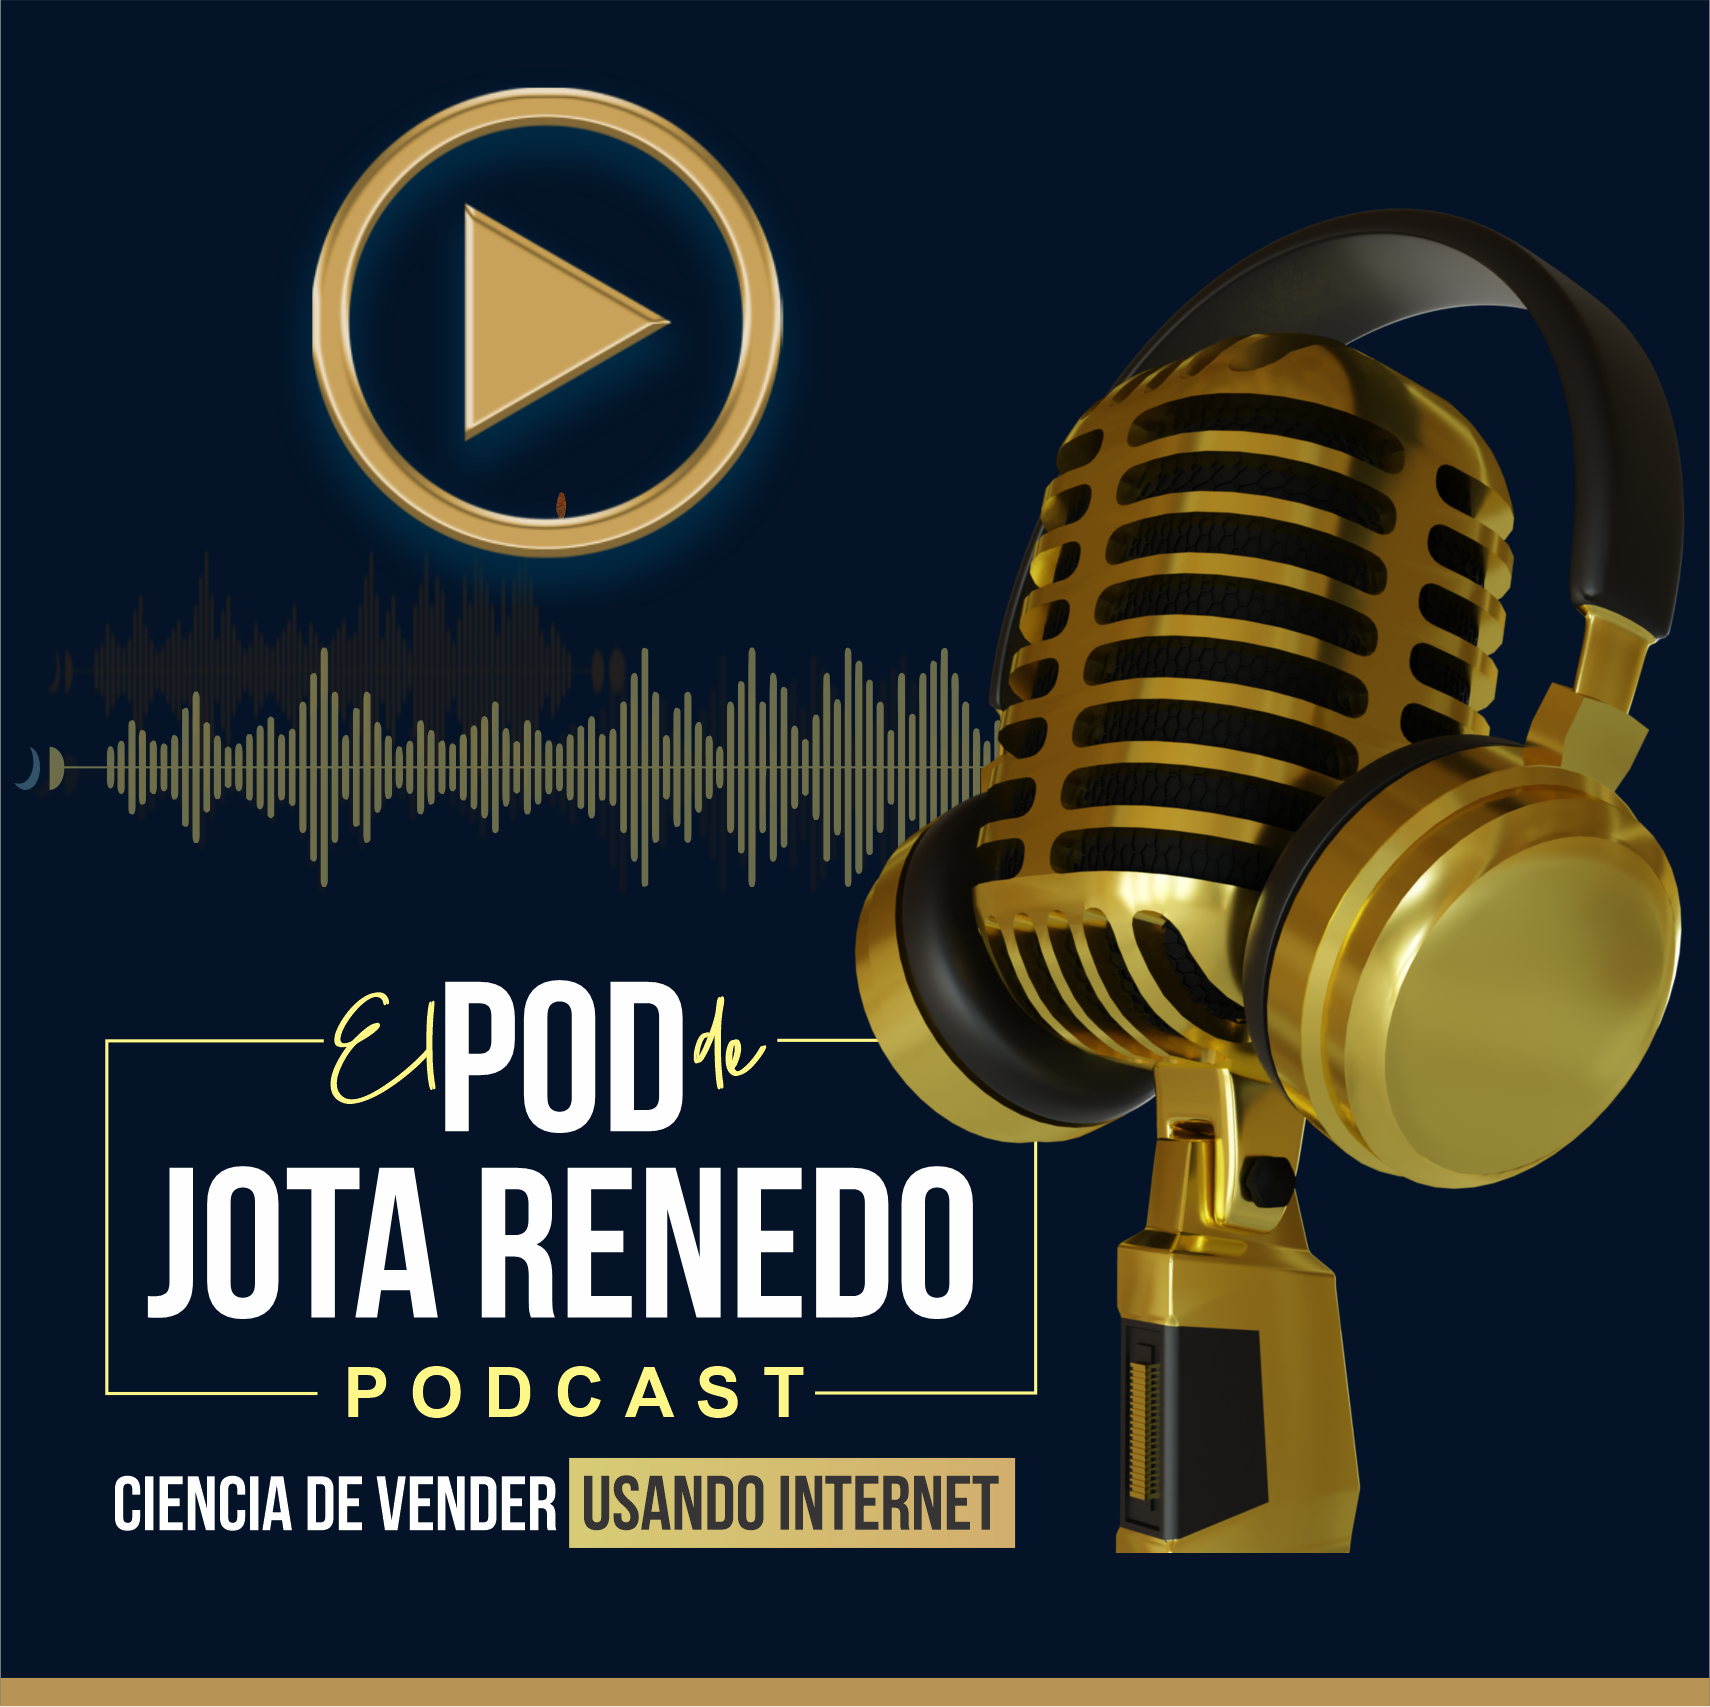 The Jota Renedo Podcast